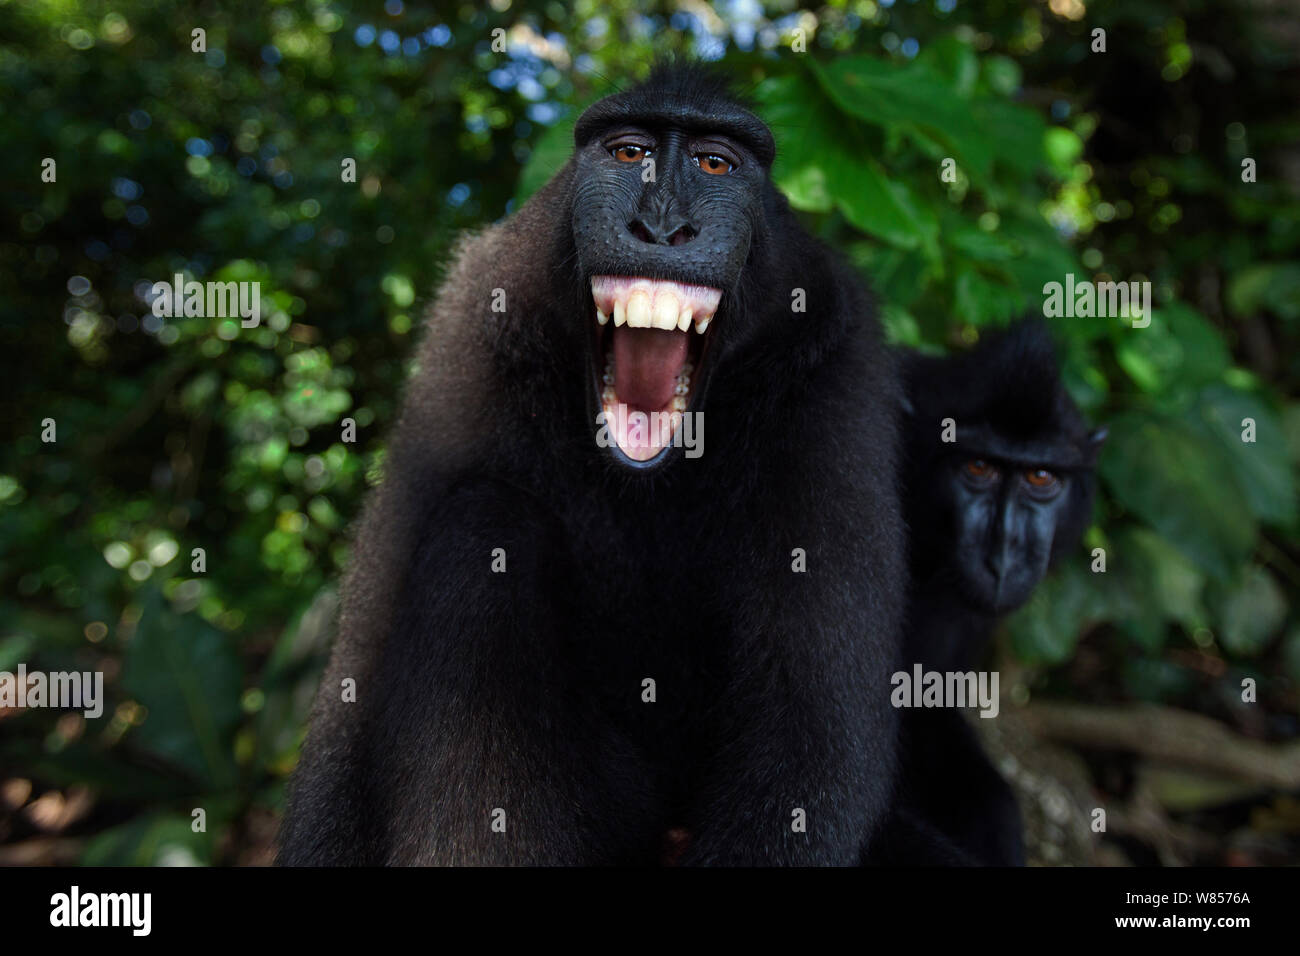 Celebes/Schwarz crested Makaken (Macaca nigra) Sub-männlichen Erwachsenen die Bedrohung Geste, wahrscheinlich gegen die Reflexion in der Kameralinse, Tangkoko National Park, Sulawesi, Indonesien. Stockfoto